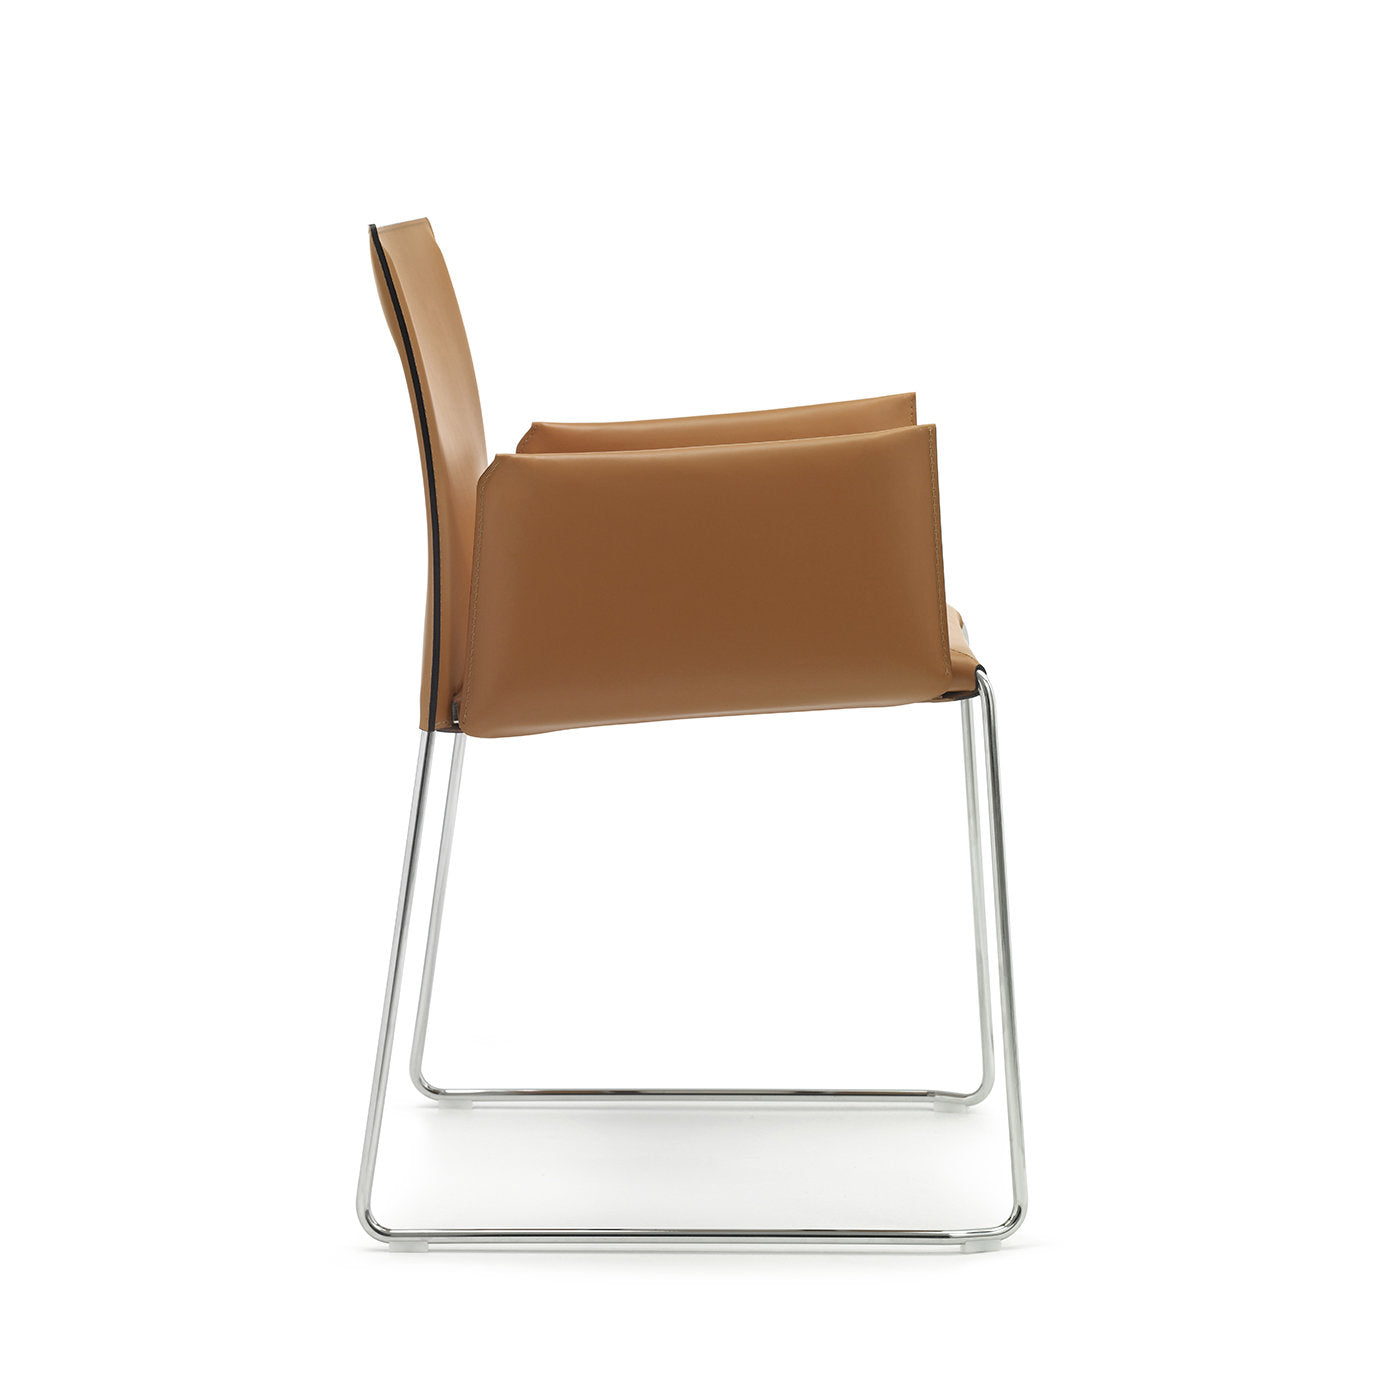 Bizzy Chair by Franco Bizzozzero - Alternative view 1